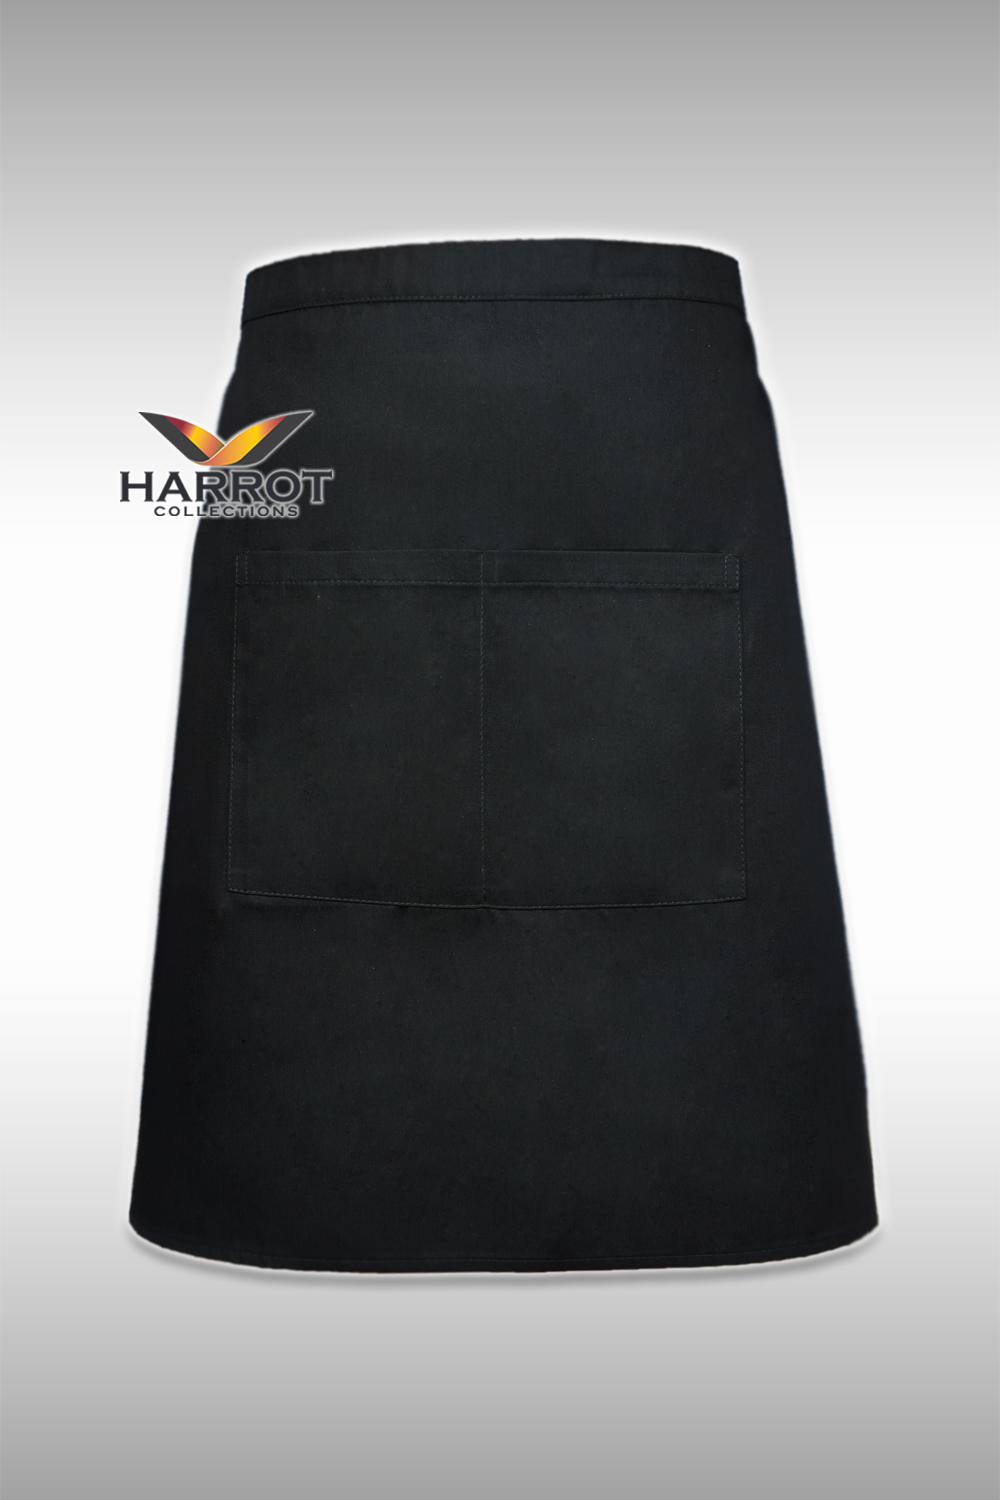 ผ้ากันเปื้อน ผ้ากันเปื้อนเชฟ ผ้ากันเปื้อนพ่อครัว ผ้ากันเปื้อนกุ๊ก ผ้ากันเปื้อนเสิร์ฟ ครึ่งสั้น สีดำ (FSA0102)